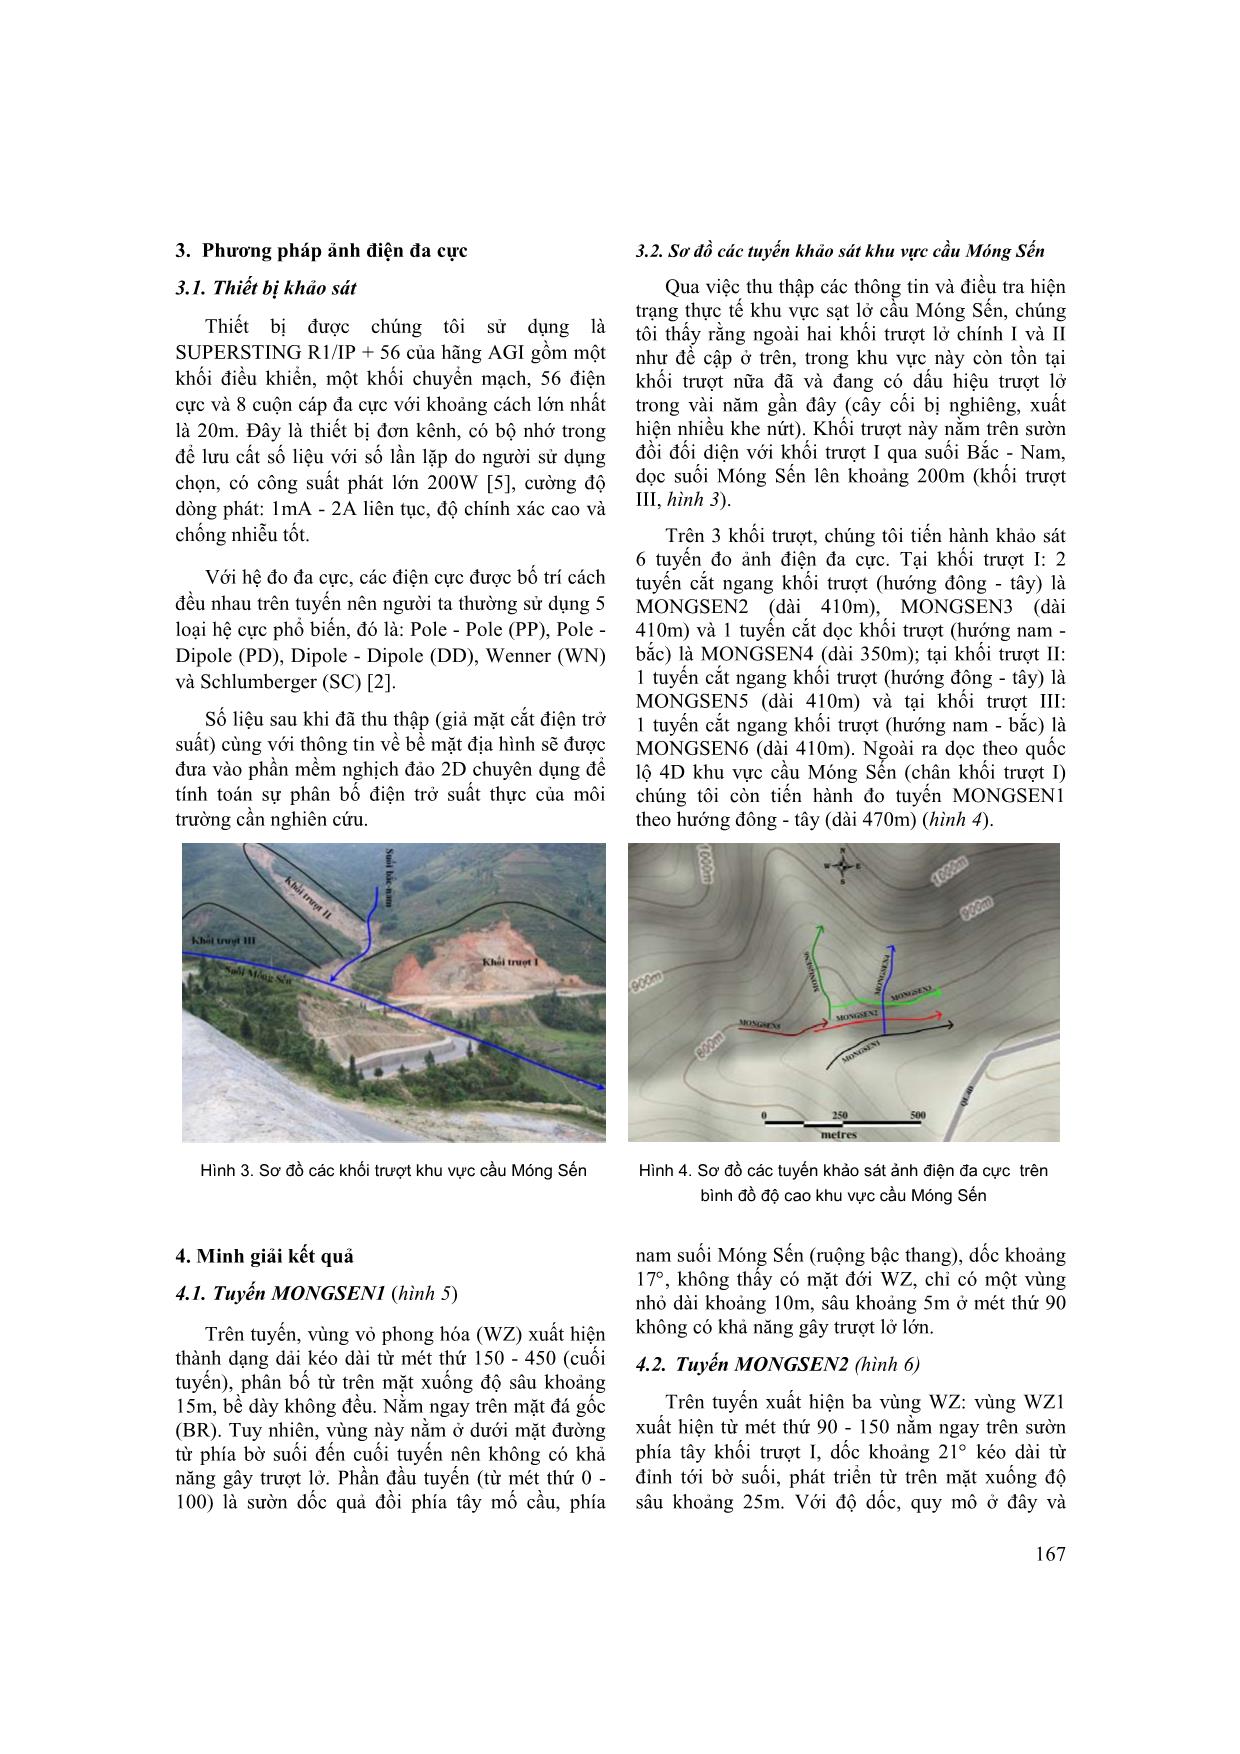 Nghiên cứu xác định nguyên nhân trượt lở khu vực cầu Móng Sến, tỉnh Lào Cai trang 4